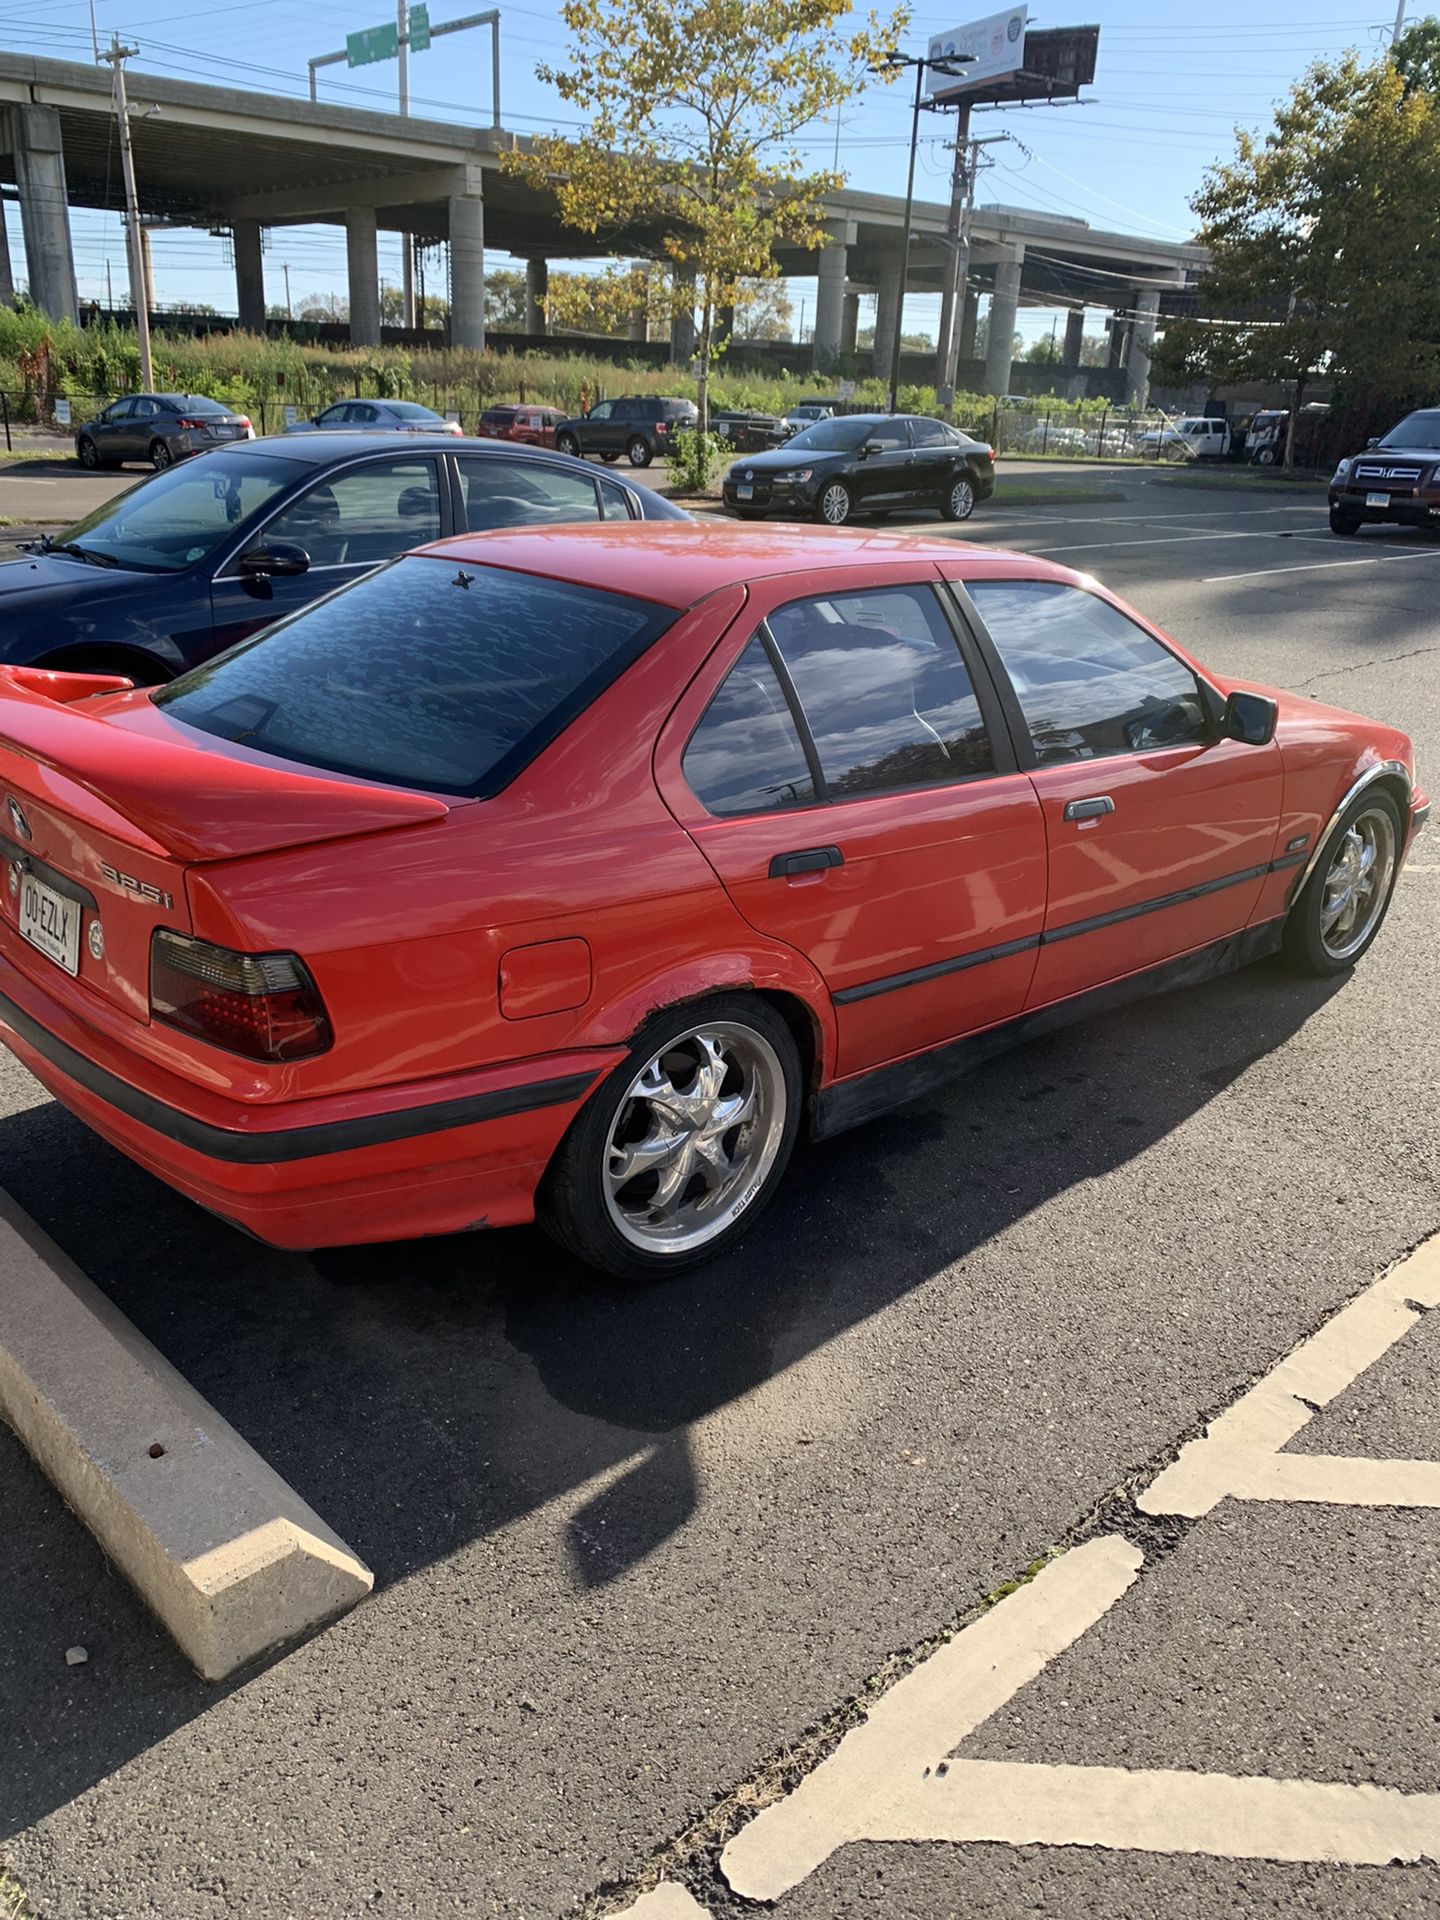 1994 BMW 325i